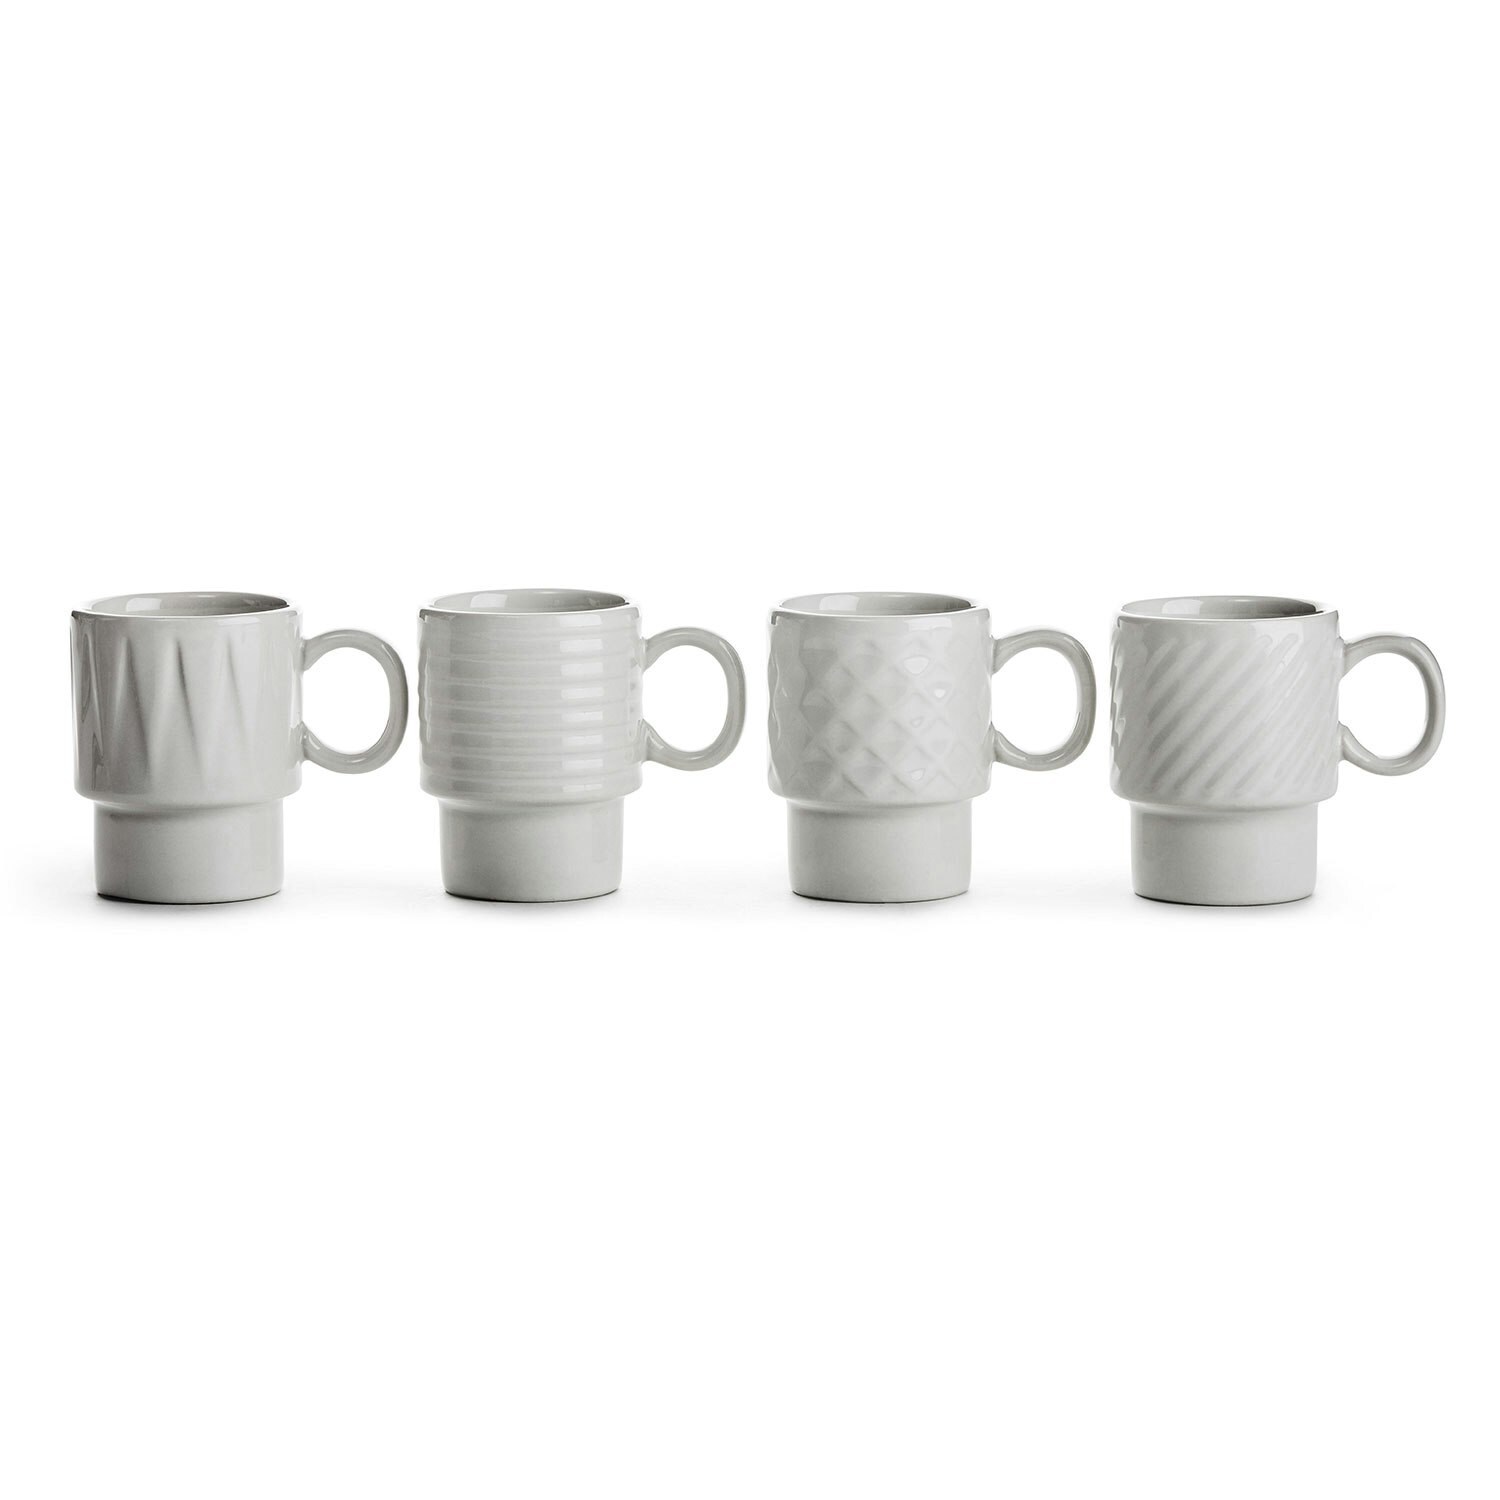 https://royaldesign.com/image/2/sagaform-coffee-more-espresso-mug-4-pcs-0